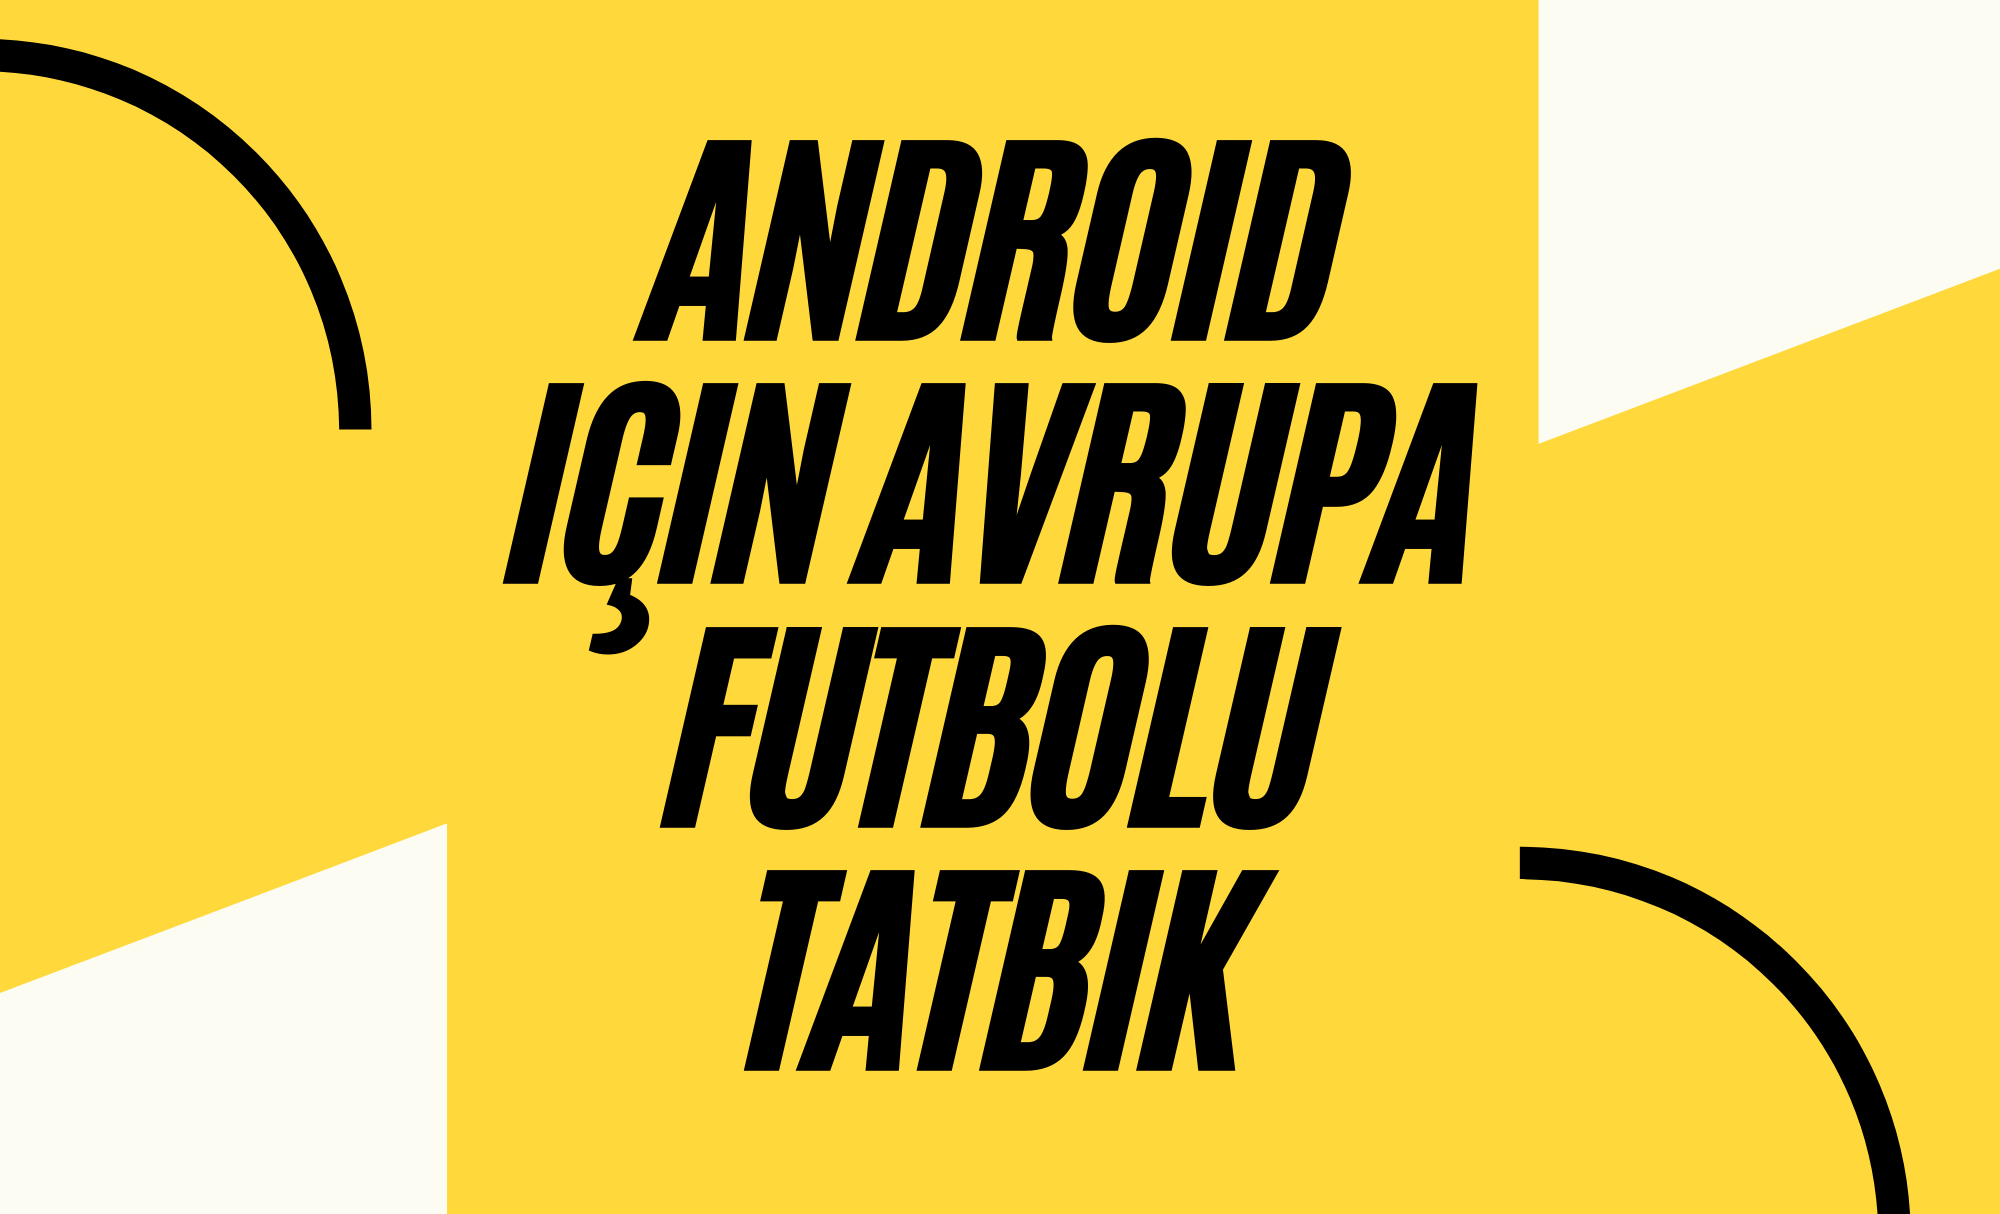 Android-için-Avrupa-Futbolu-tatbik